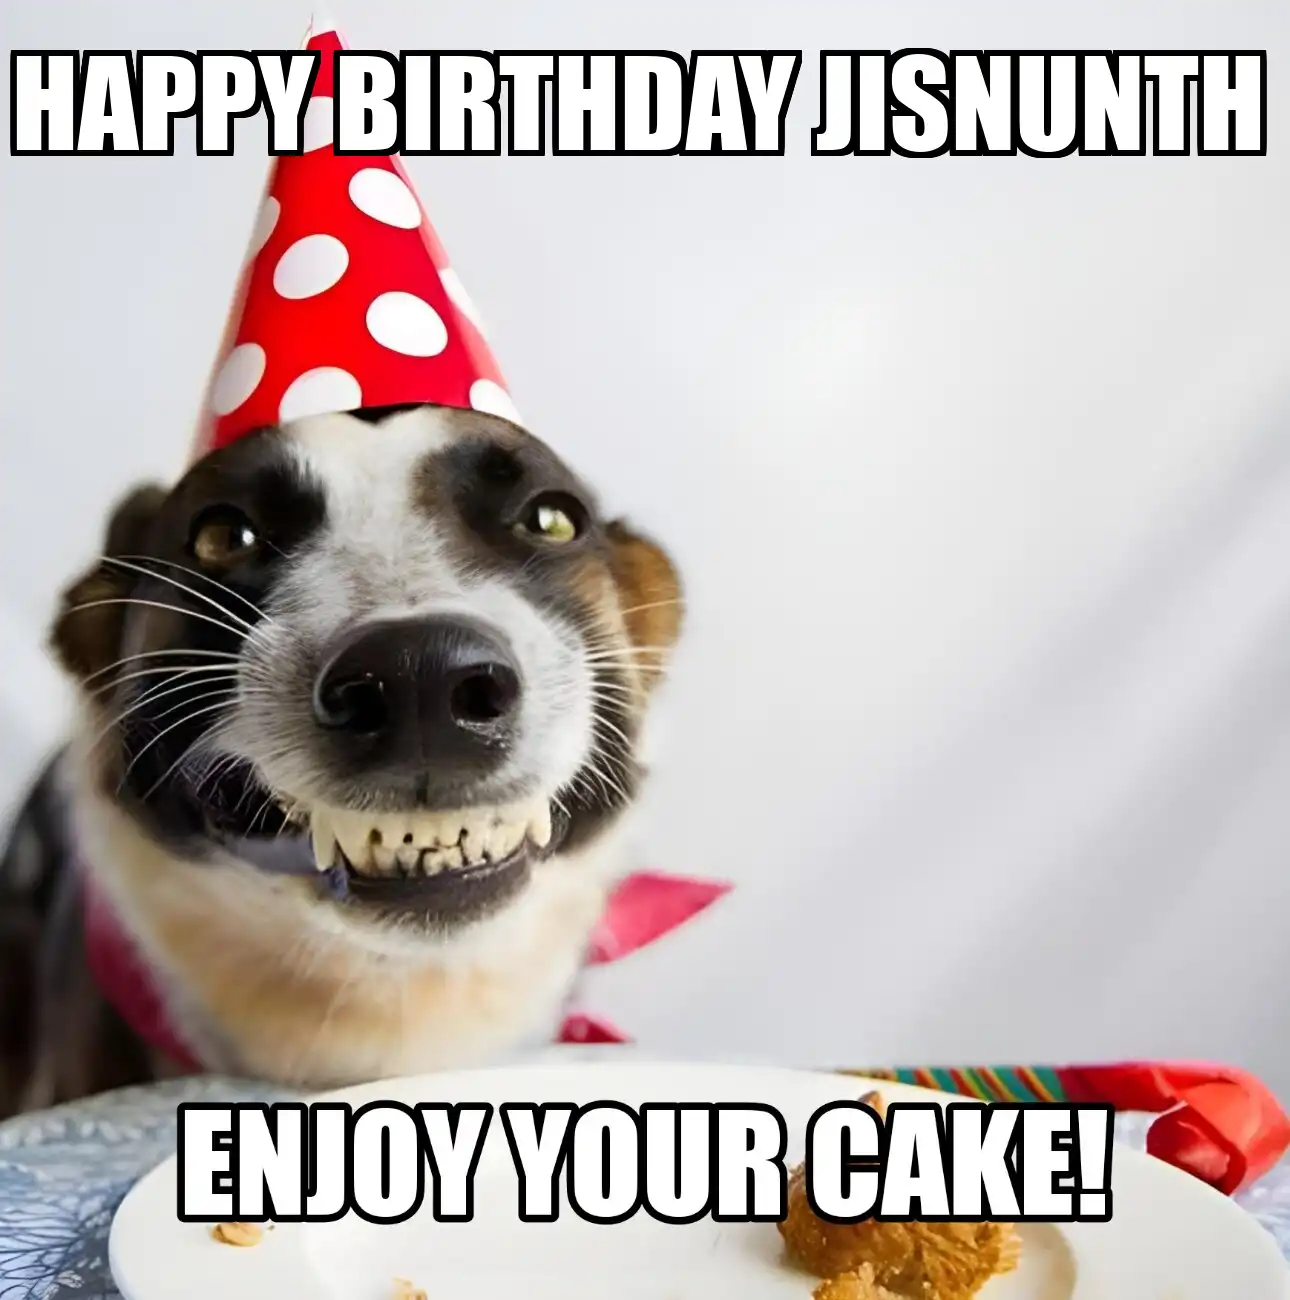 Happy Birthday Jisnunth Enjoy Your Cake Dog Meme